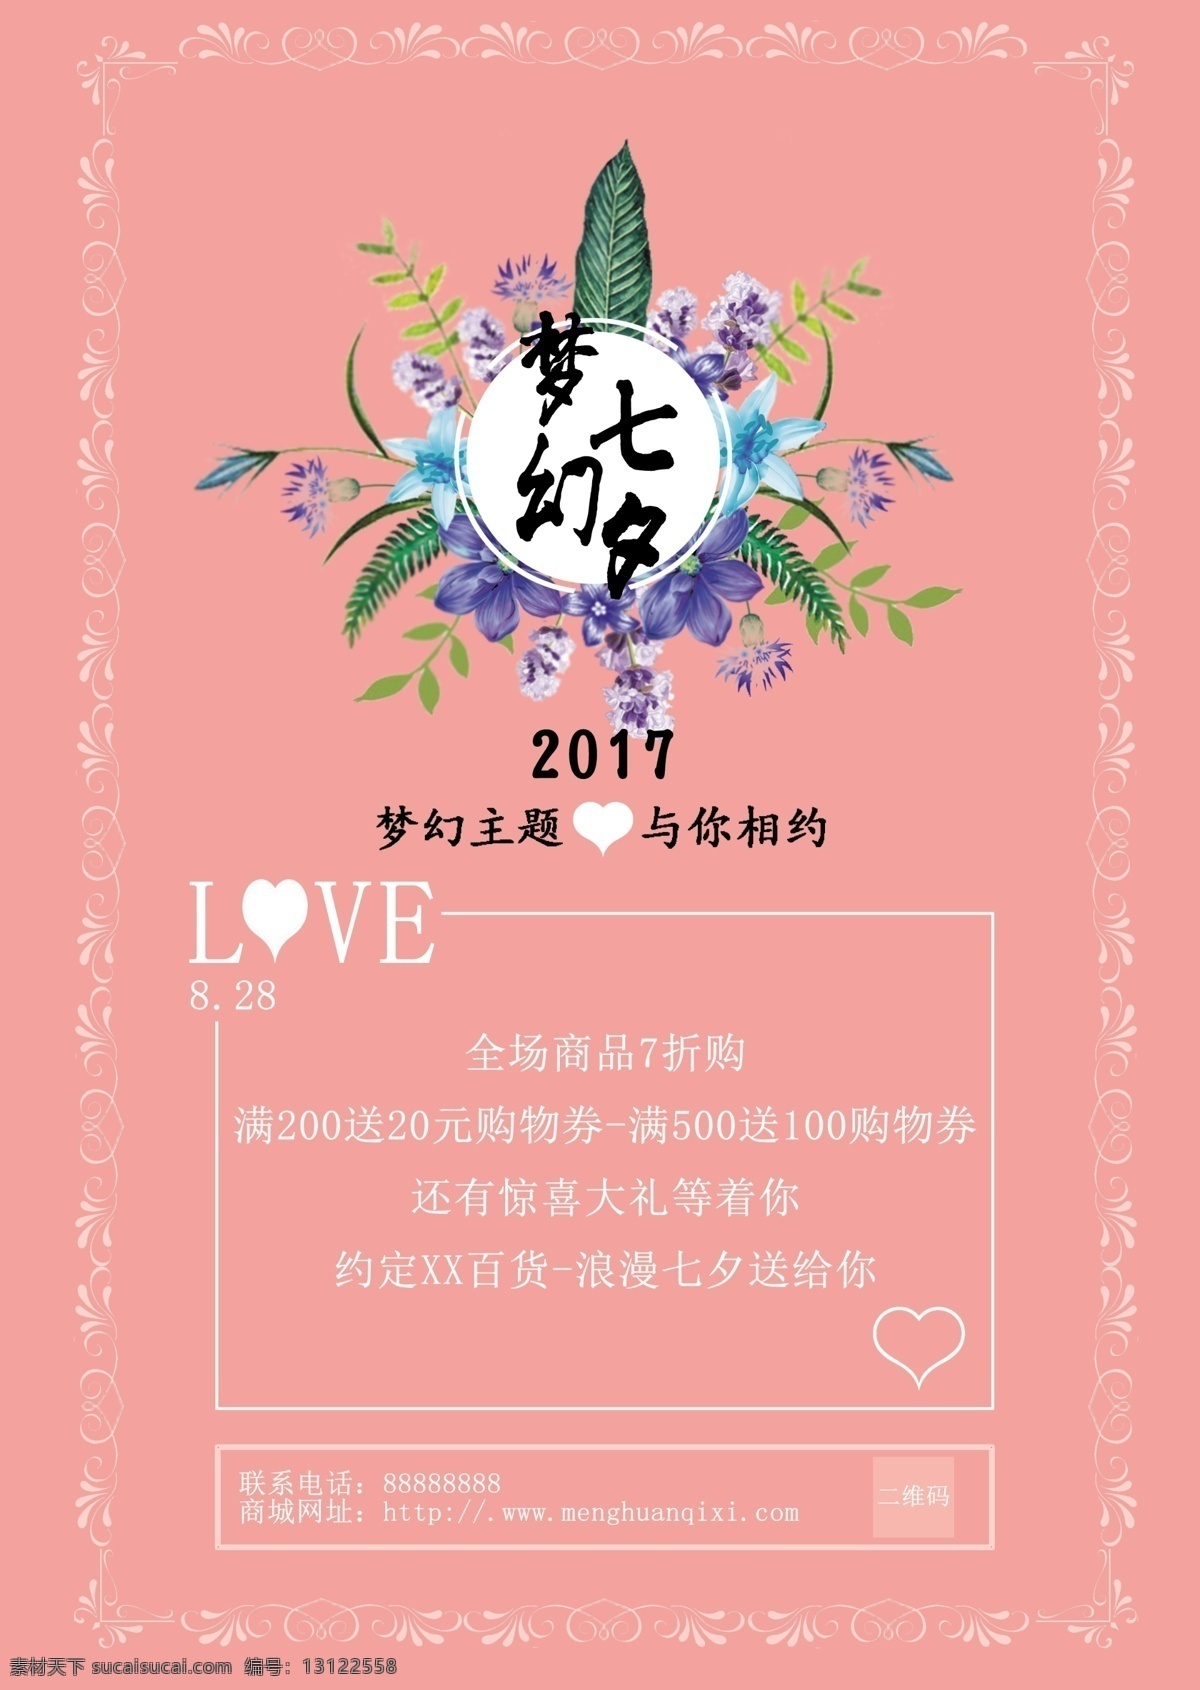 七夕海报 七夕主题 粉红色系 love 梦幻七夕 边框 2017七夕 与你相遇